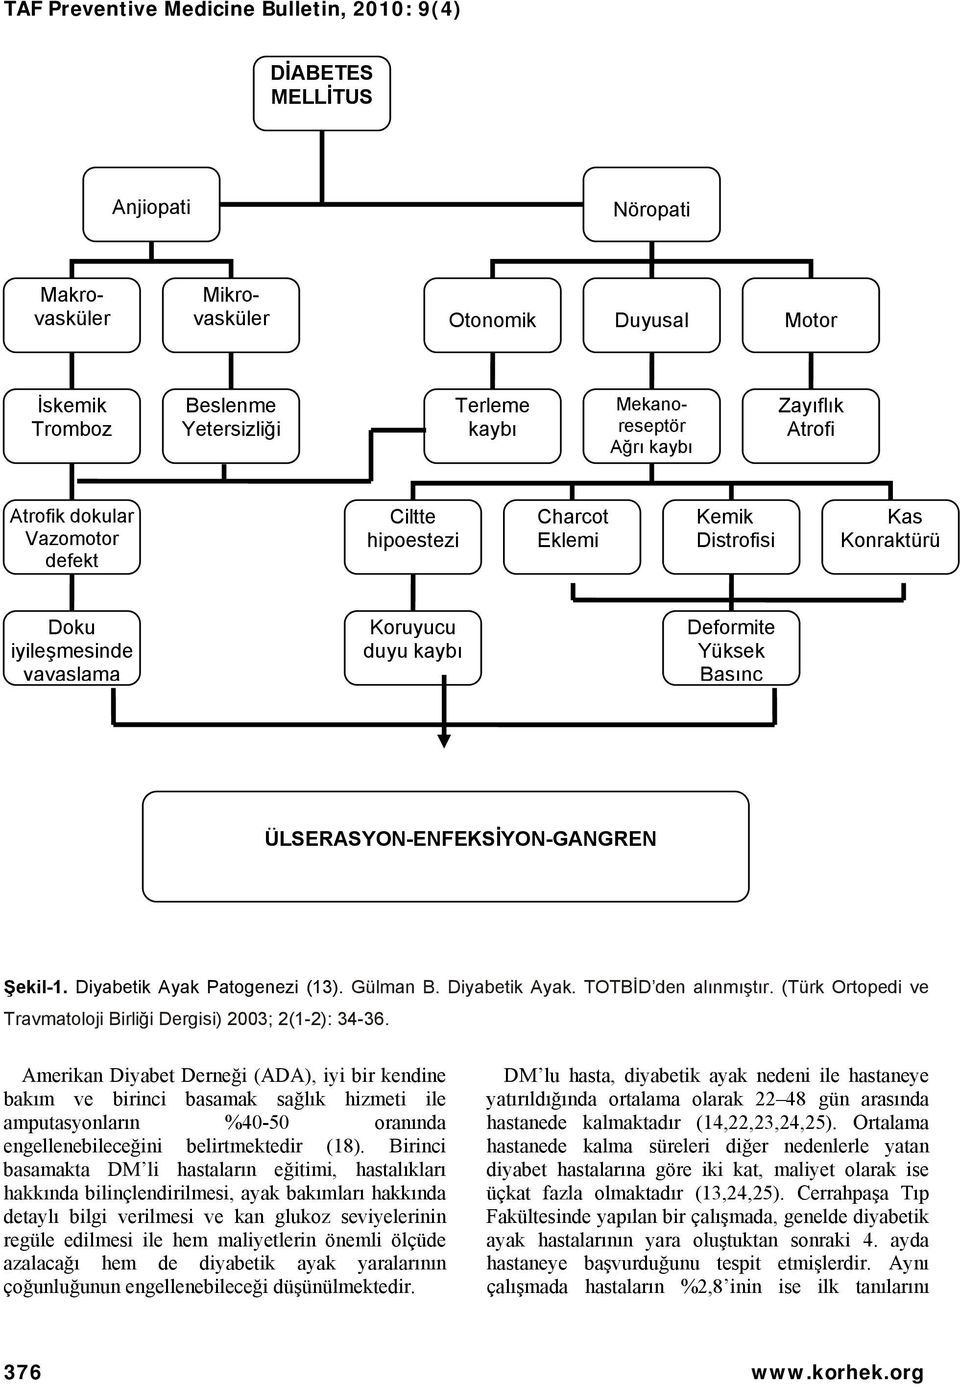 Diyabetik Ayak Patogenezi (13). Gülman B. Diyabetik Ayak. TOTBİD den alınmıştır. (Türk Ortopedi ve Travmatoloji Birliği Dergisi) 2003; 2(1-2): 34-36.